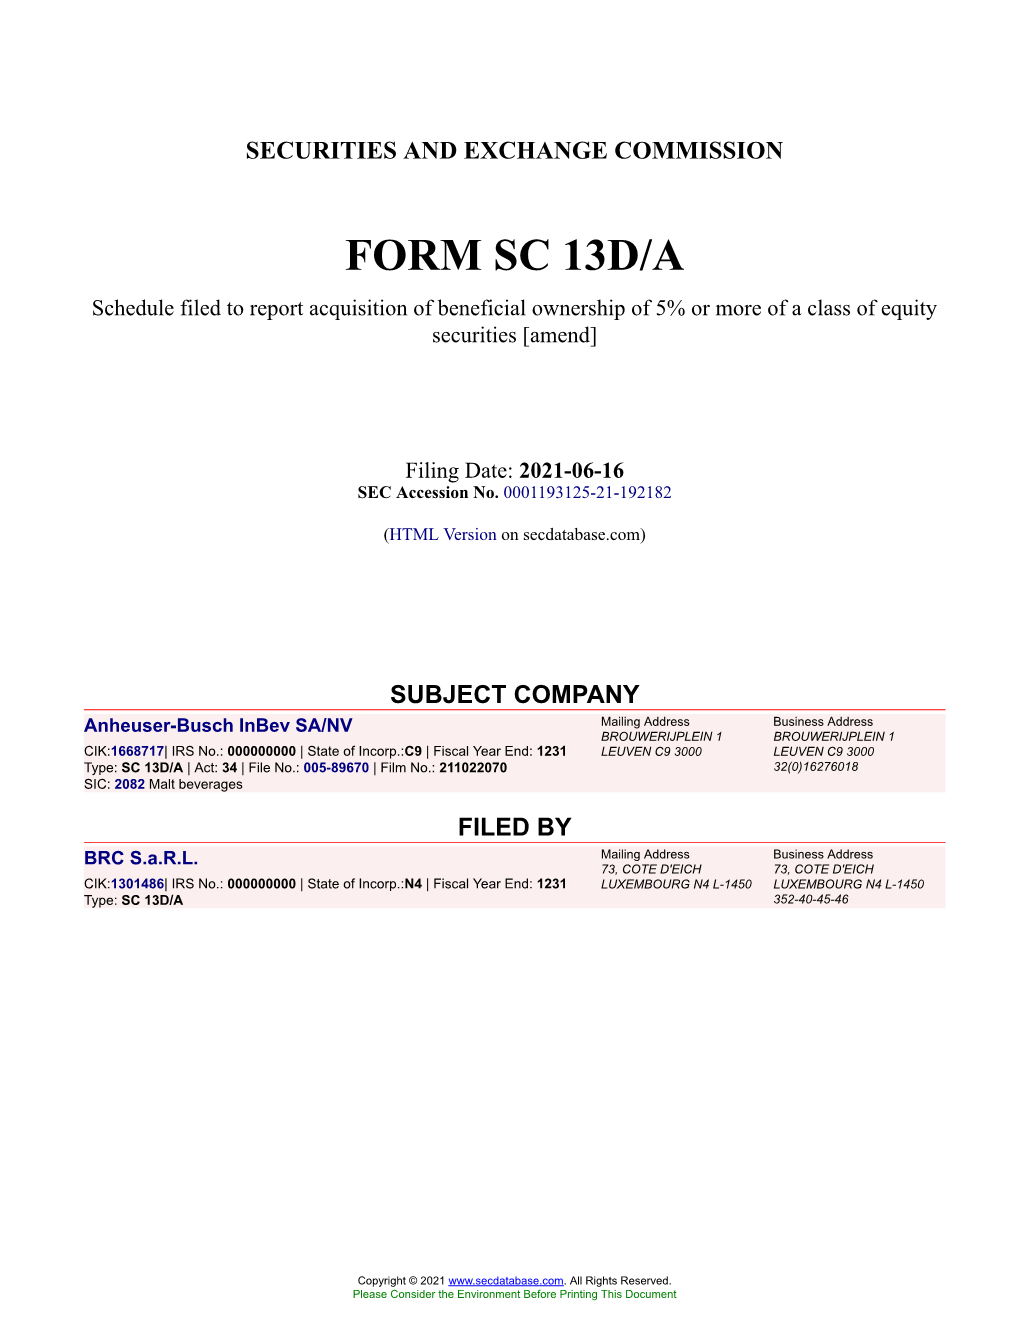 Anheuser-Busch Inbev SA/NV Form SC 13D/A Filed